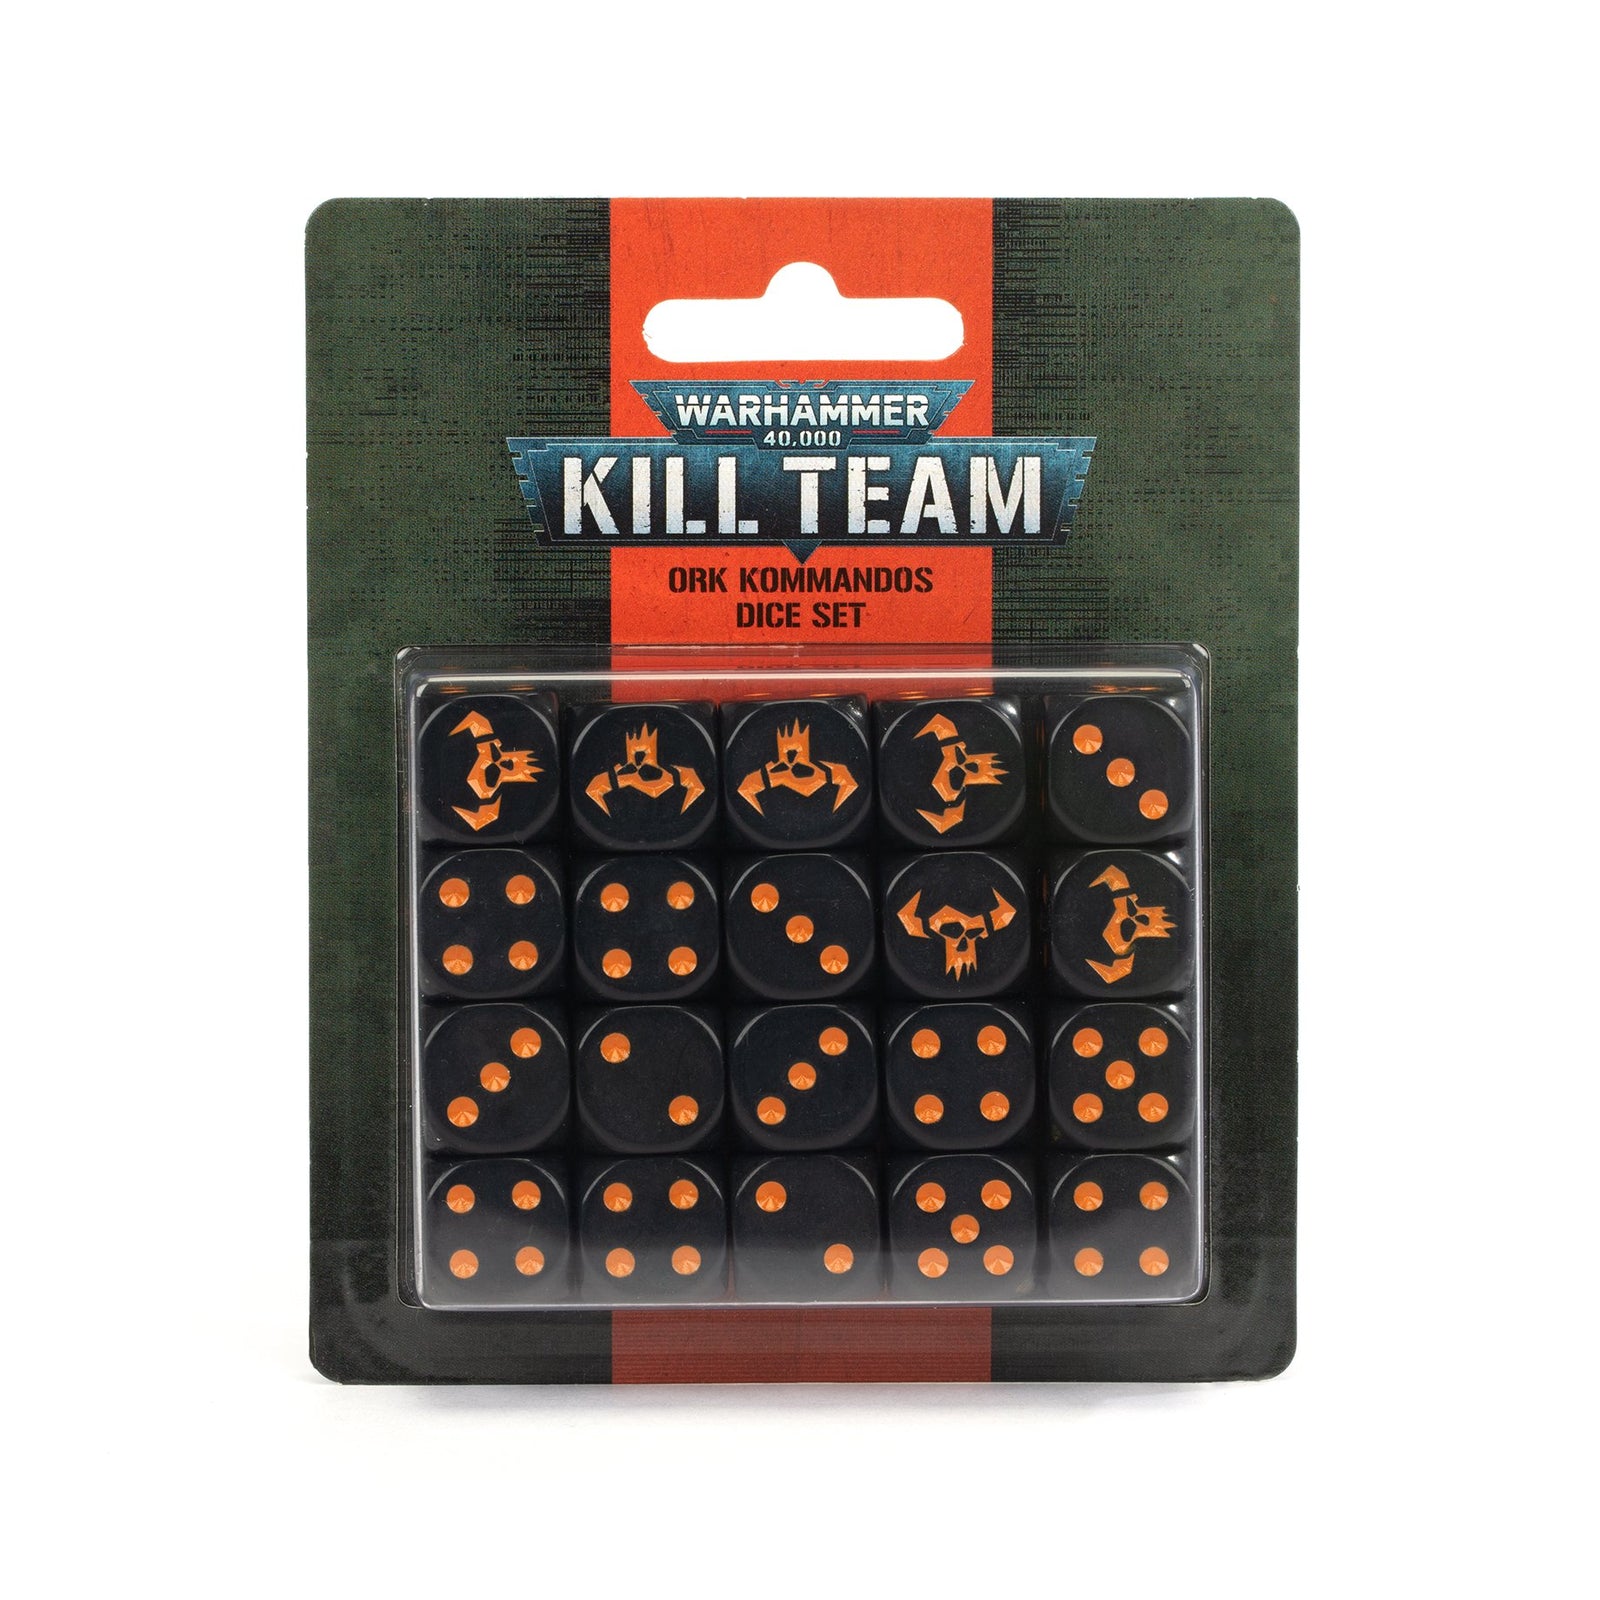 Kill Team Dice Set - Ork Kommandos